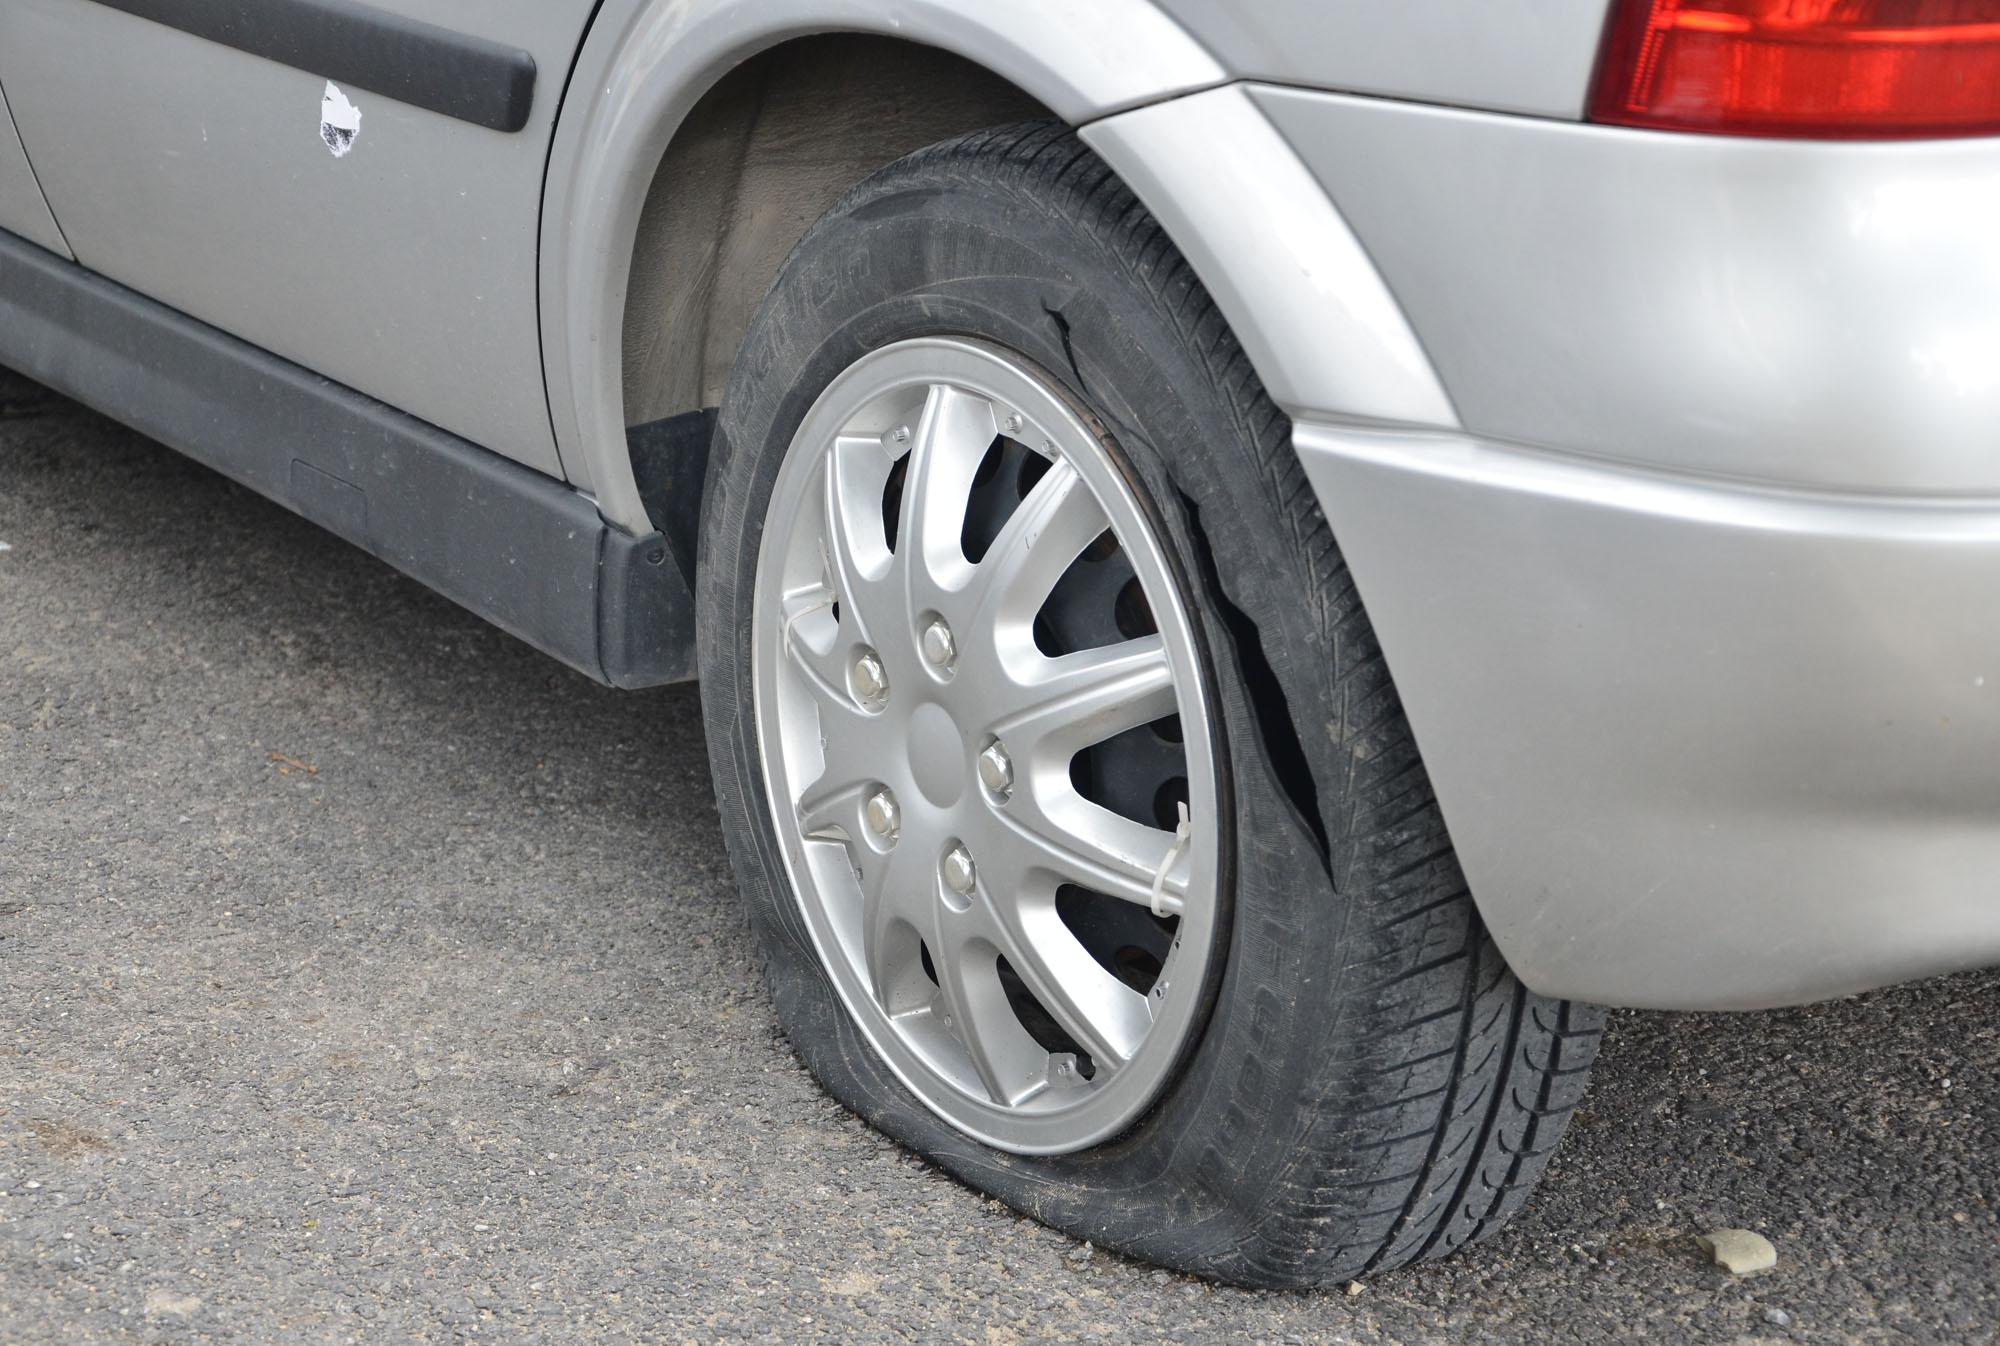 30 коли в столичен квартал осъмнали с нарязани гуми